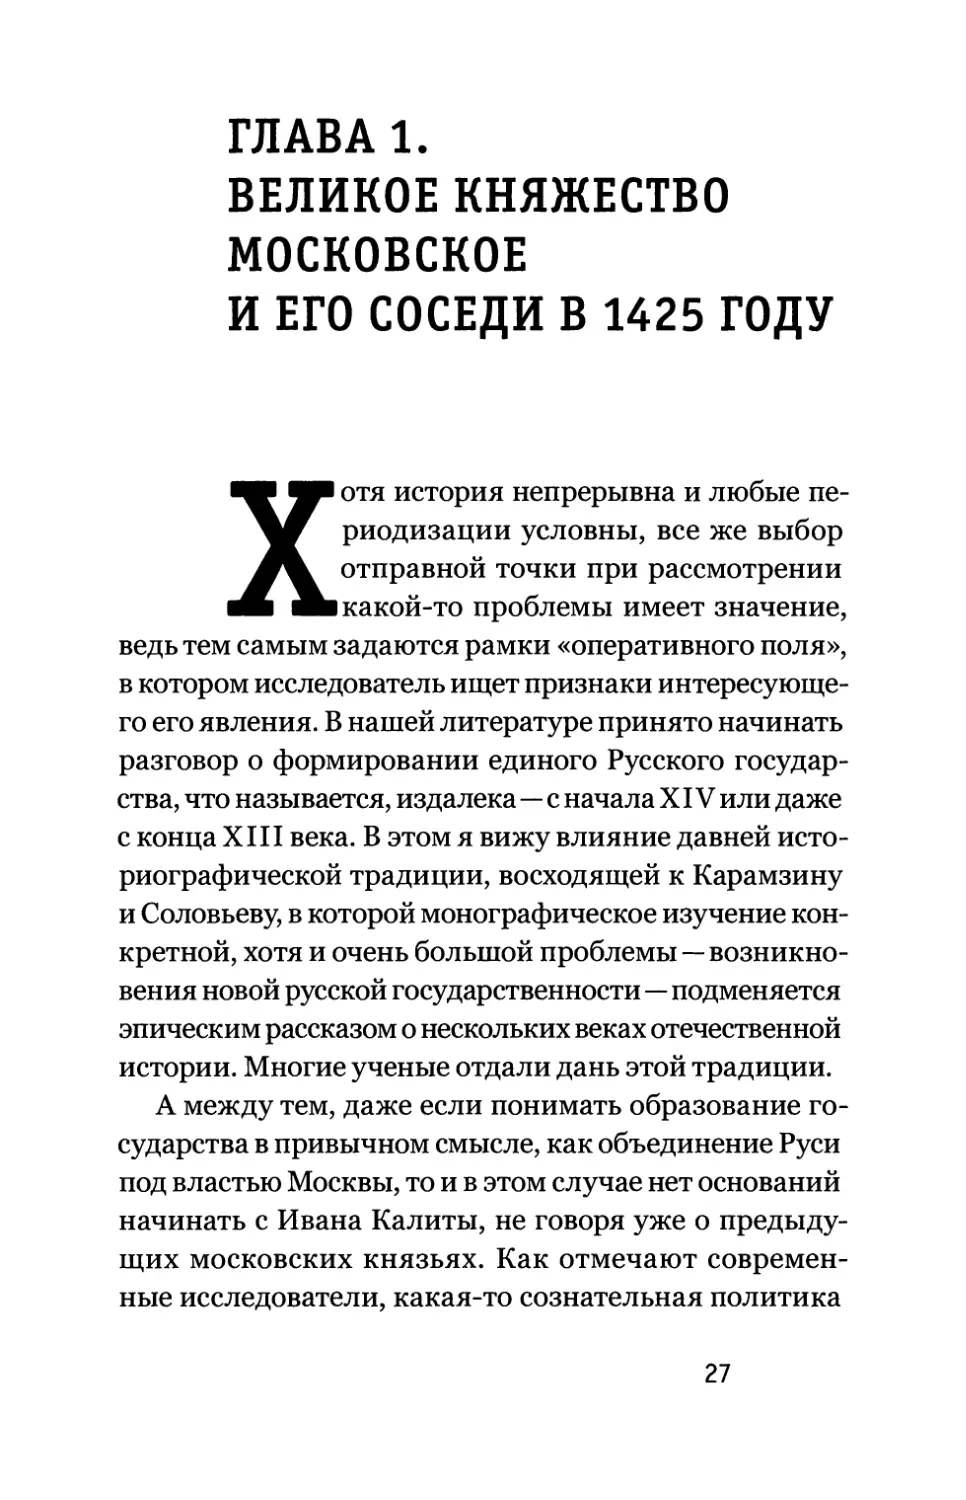 Глава 1. Великое княжество Московское и его соседи в 1425 году